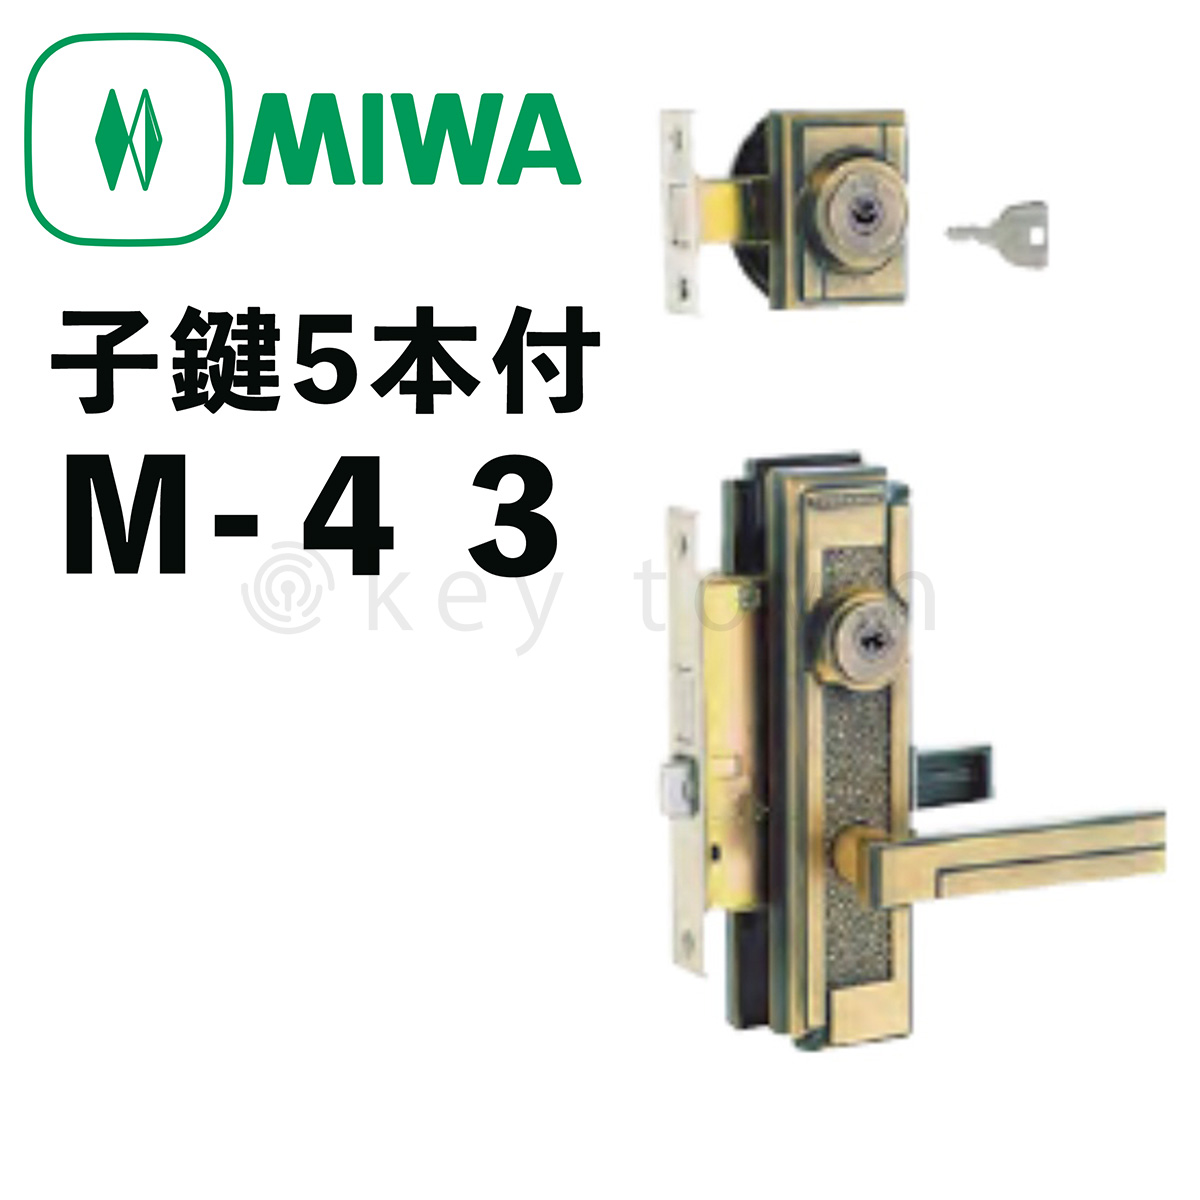 MIWA 【美和ロック】 特殊錠 装飾錠 [MIWA-M-43] Kシリーズ[M-43]｜鍵・シリンダーの格安ネット通販【鍵TOWN】